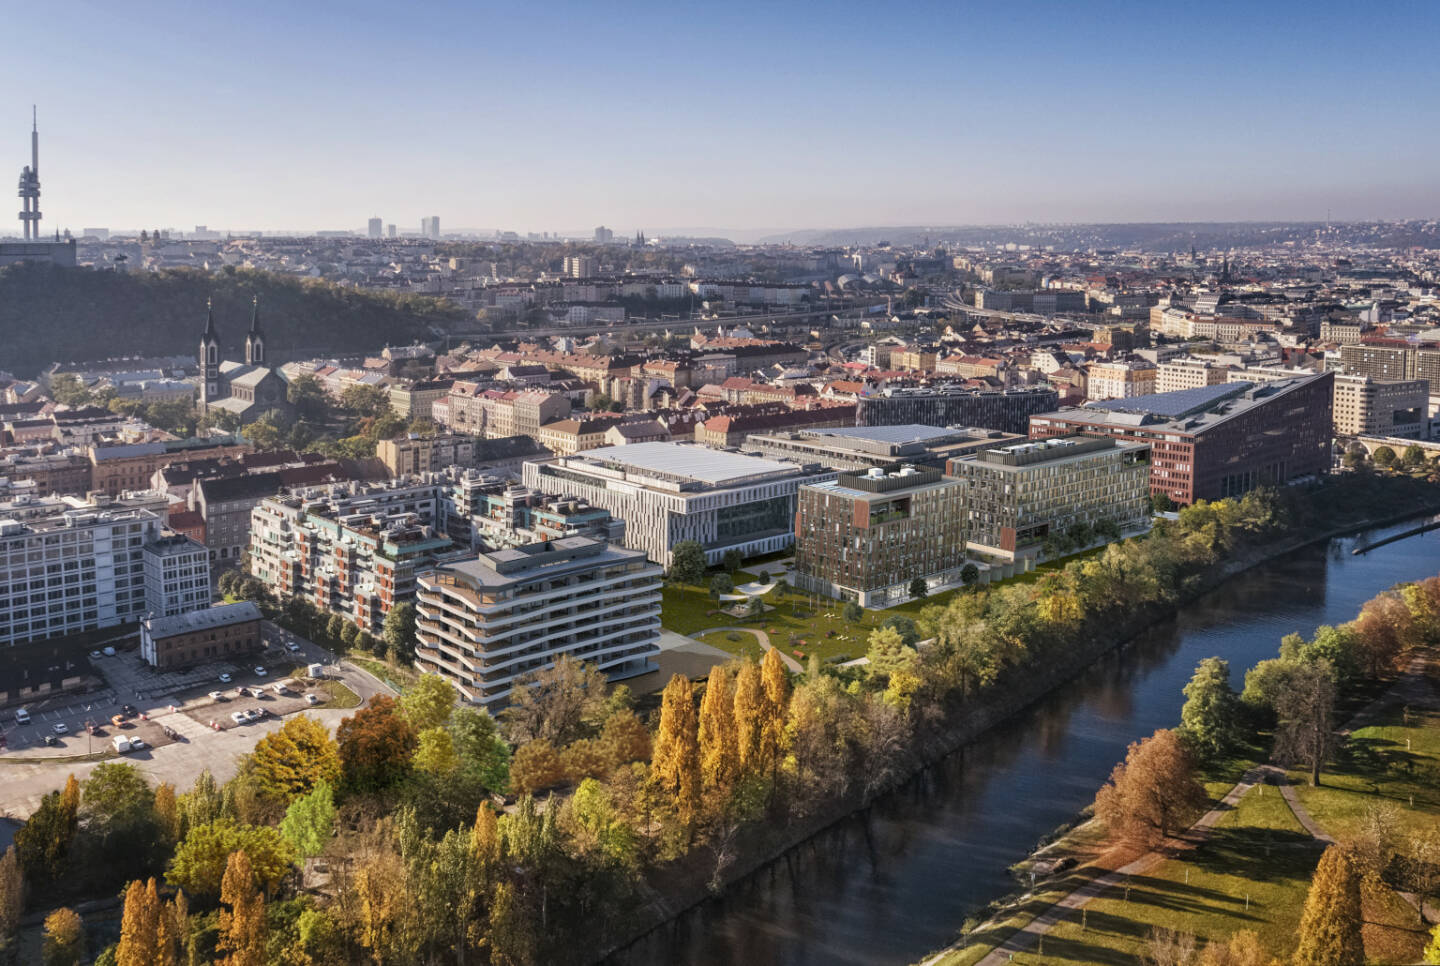 CA Immo startet Bau von zwei Bürogebäuden in Prager Top-Lage, Strategische Erweiterung des fast voll vermieteten Prager CA Immo-Portfolios, Credit: CA Immo